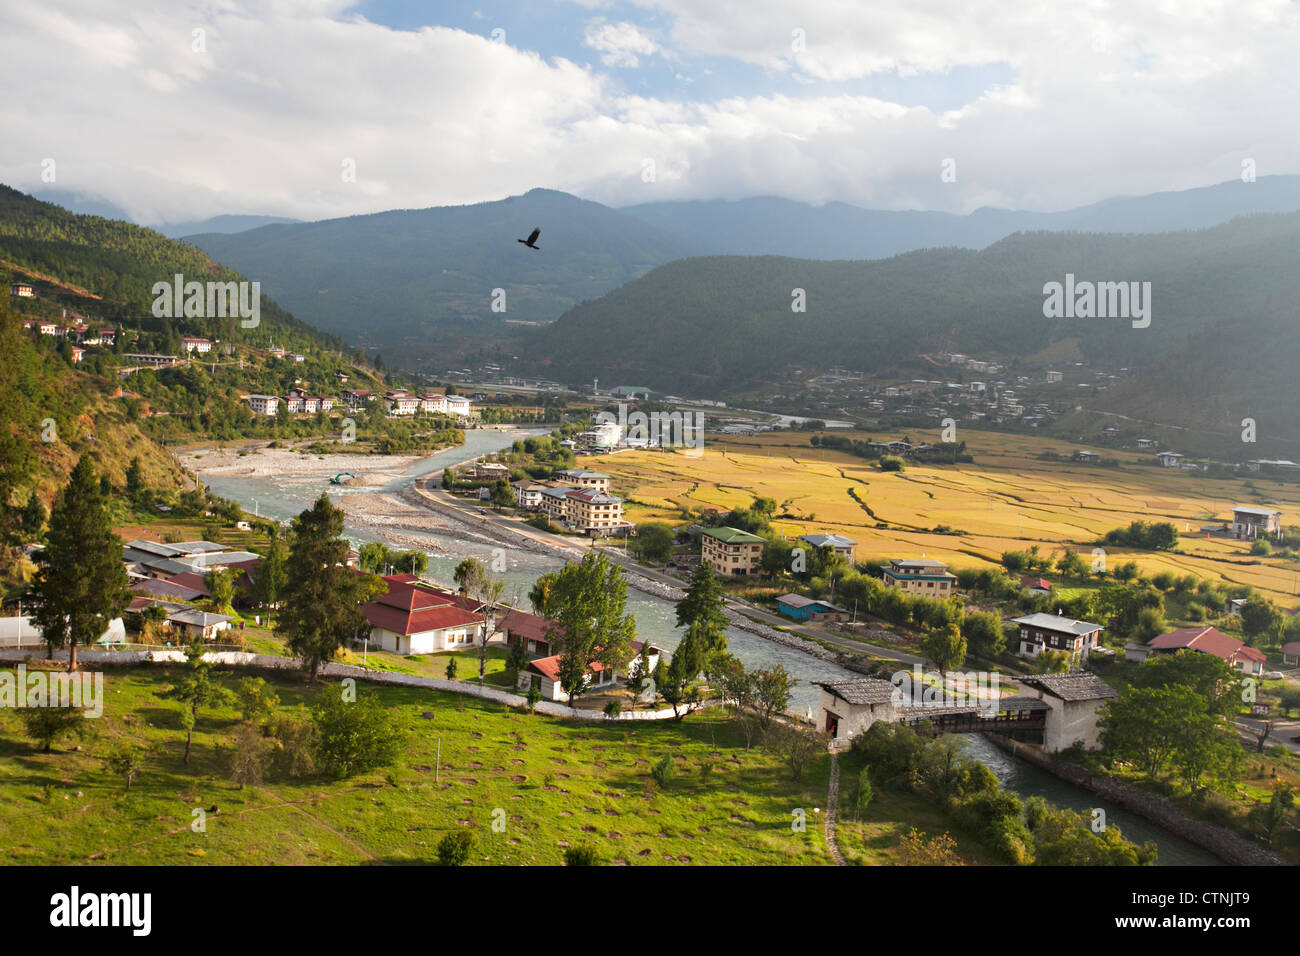 View of Paro Valley from Paro Dzong, Bhutan Stock Photo